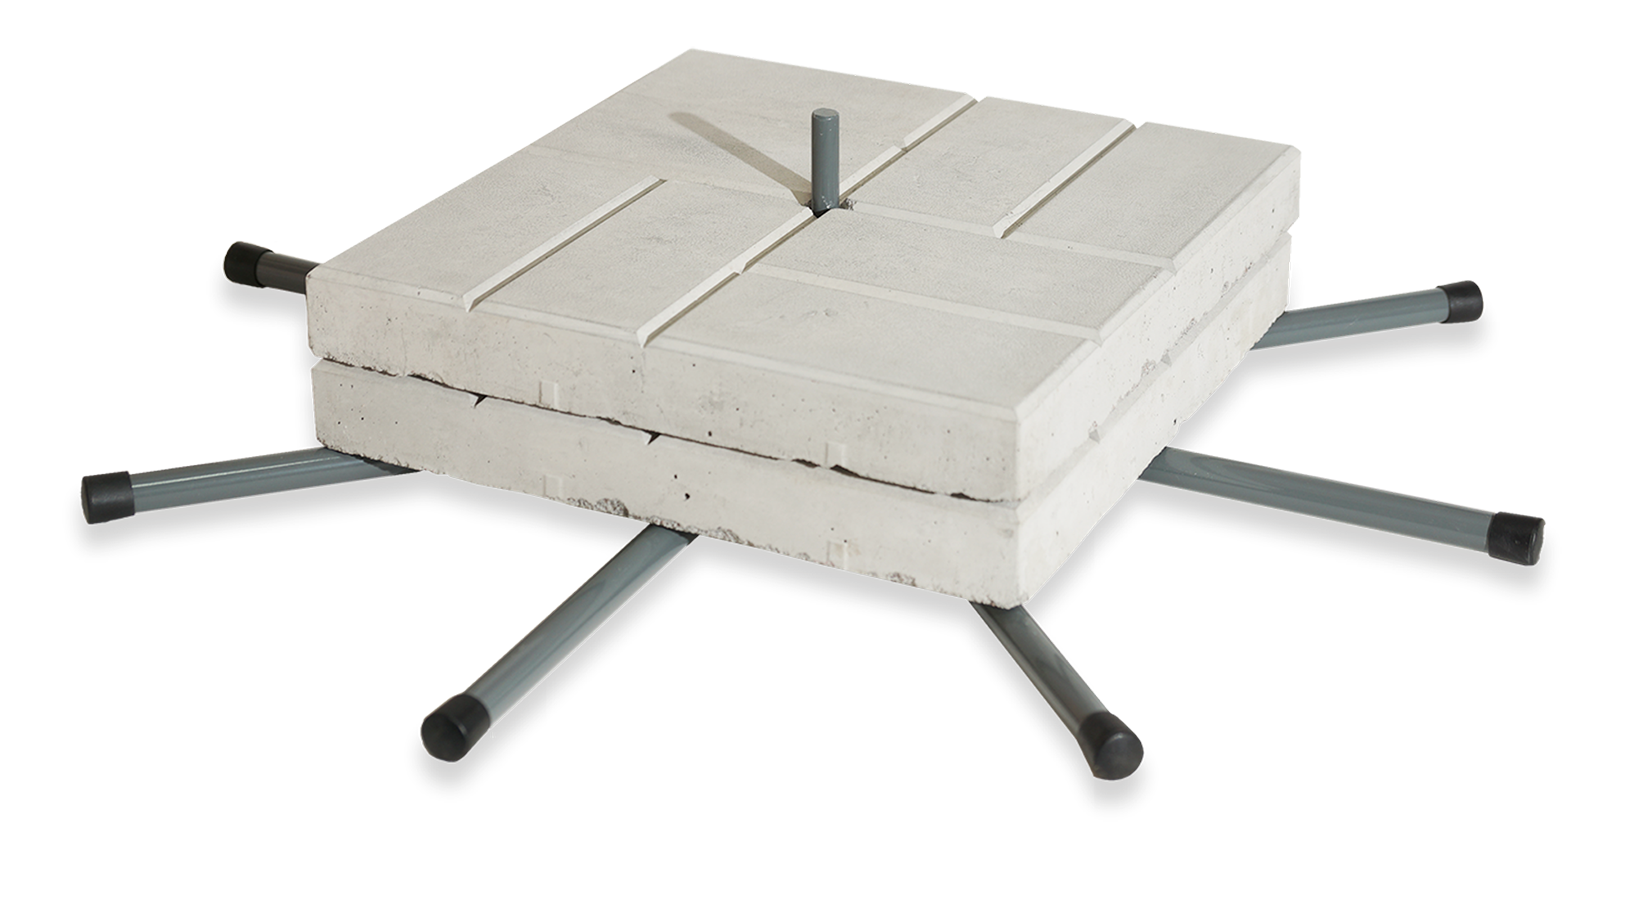 Мобильная Опора Паук - с шестью ногами, дополненная двумя бетонными плитками 40х40х5 см. 